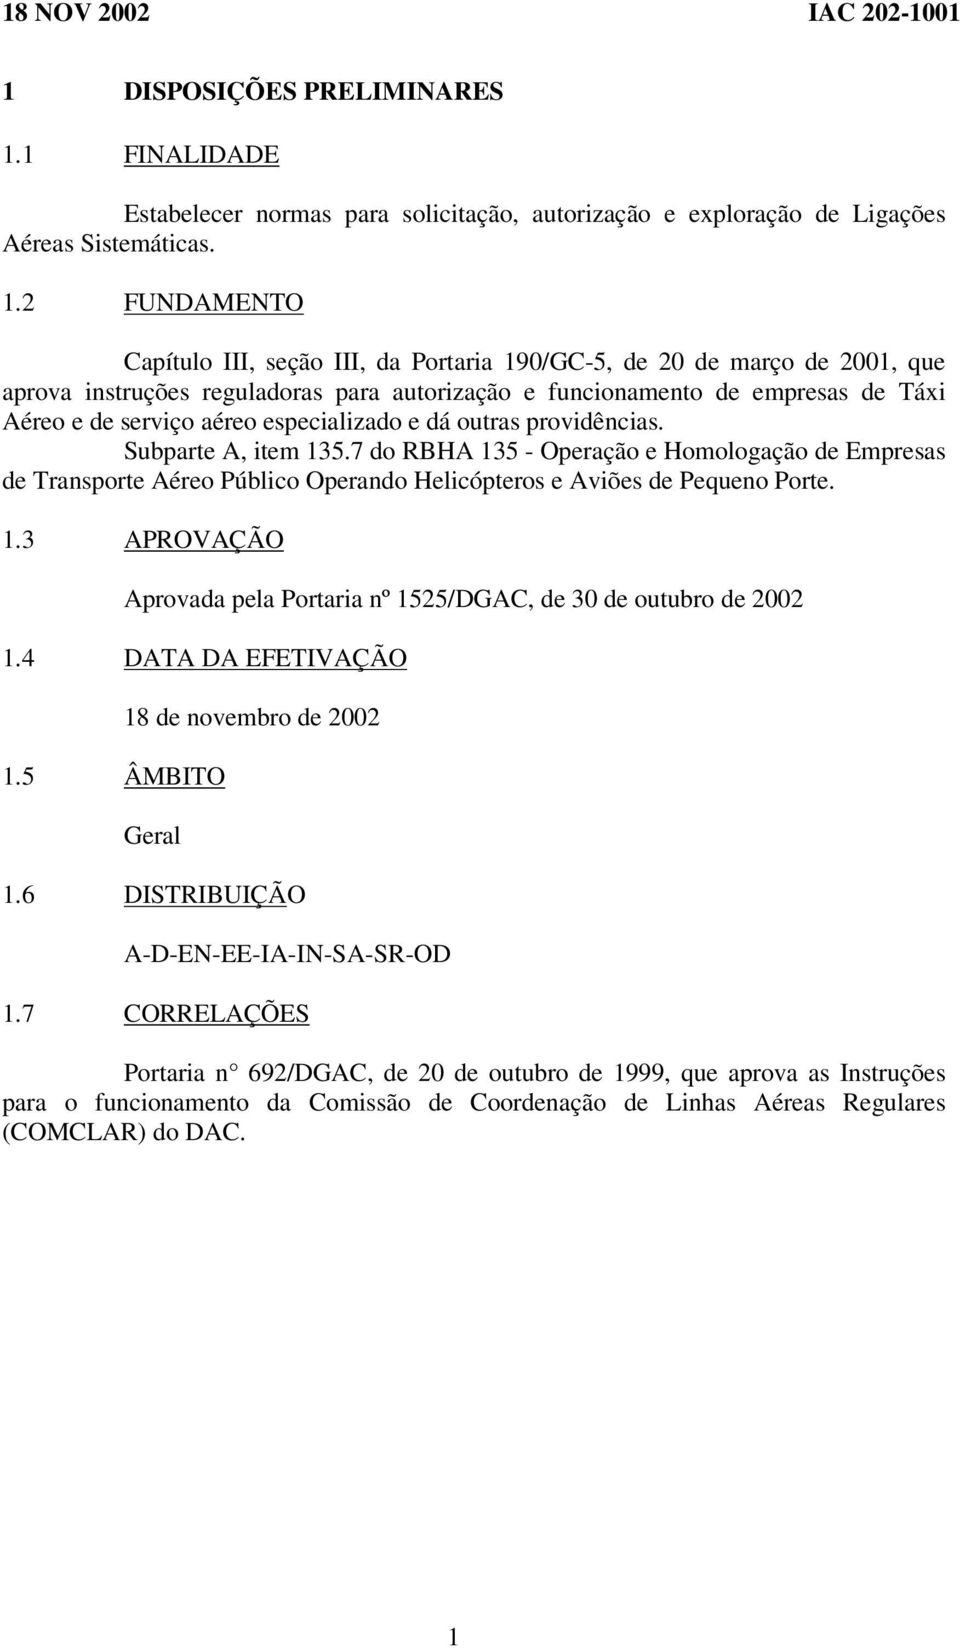 2 FUNDAMENTO Capítulo III, seção III, da Portaria 190/GC-5, de 20 de março de 2001, que aprova instruções reguladoras para autorização e funcionamento de empresas de Táxi Aéreo e de serviço aéreo